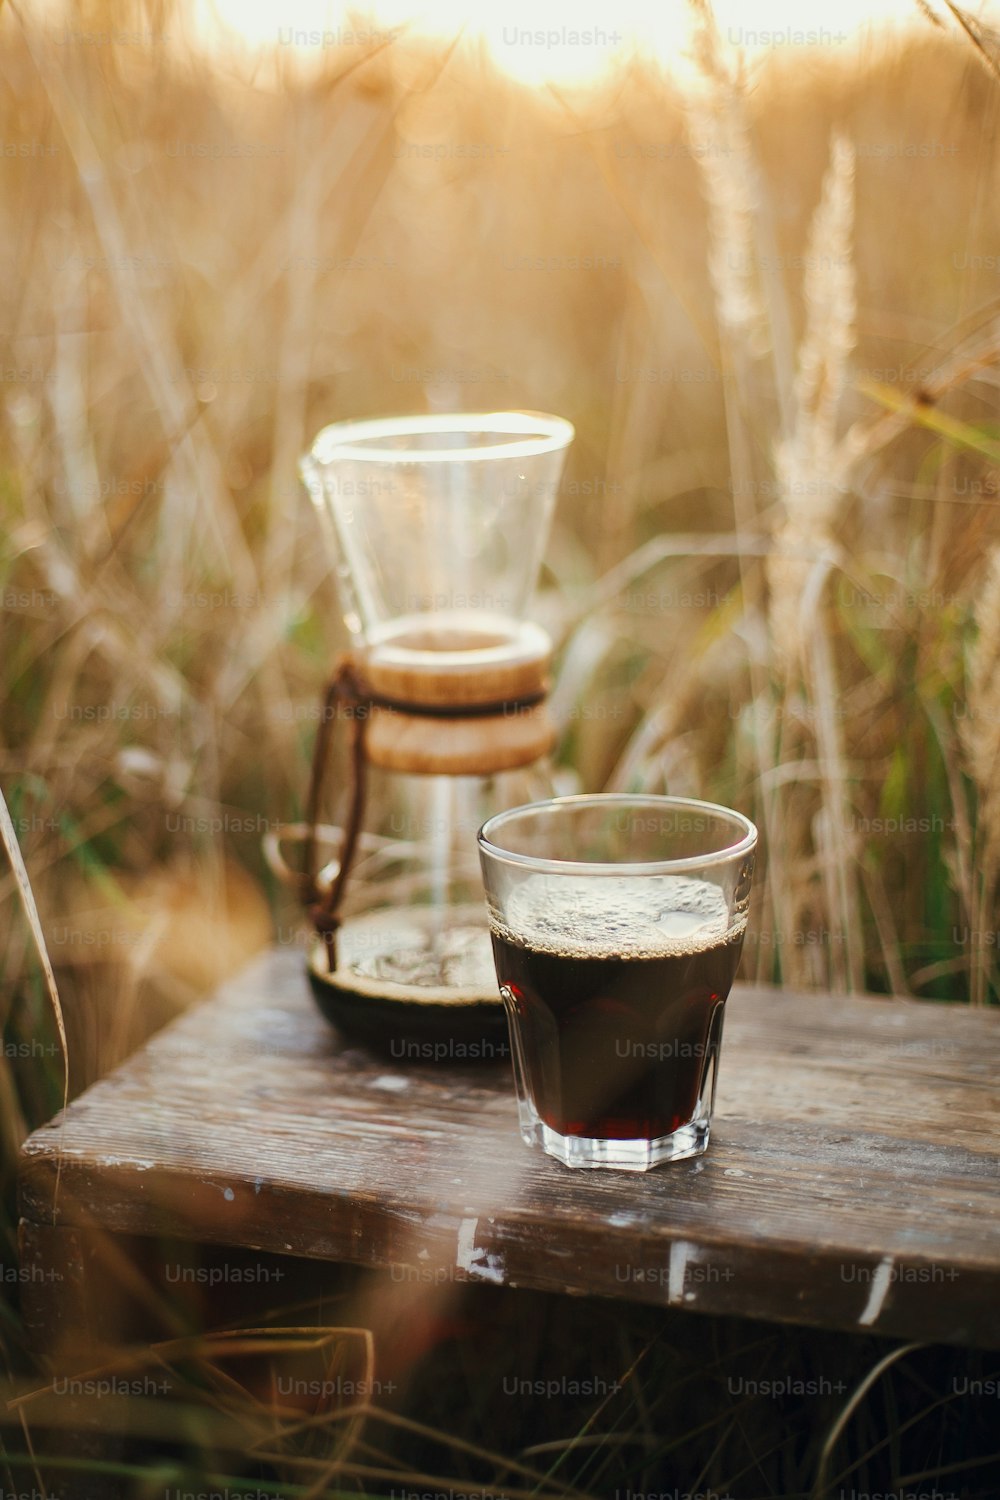 Preparación alternativa de café al aire libre en viajes. Café caliente en taza de vidrio y frasco de vidrio en fondo en luz cálida soleada en hierbas rurales. Momento tranquilo rústico atmosférico. Imagen vertical